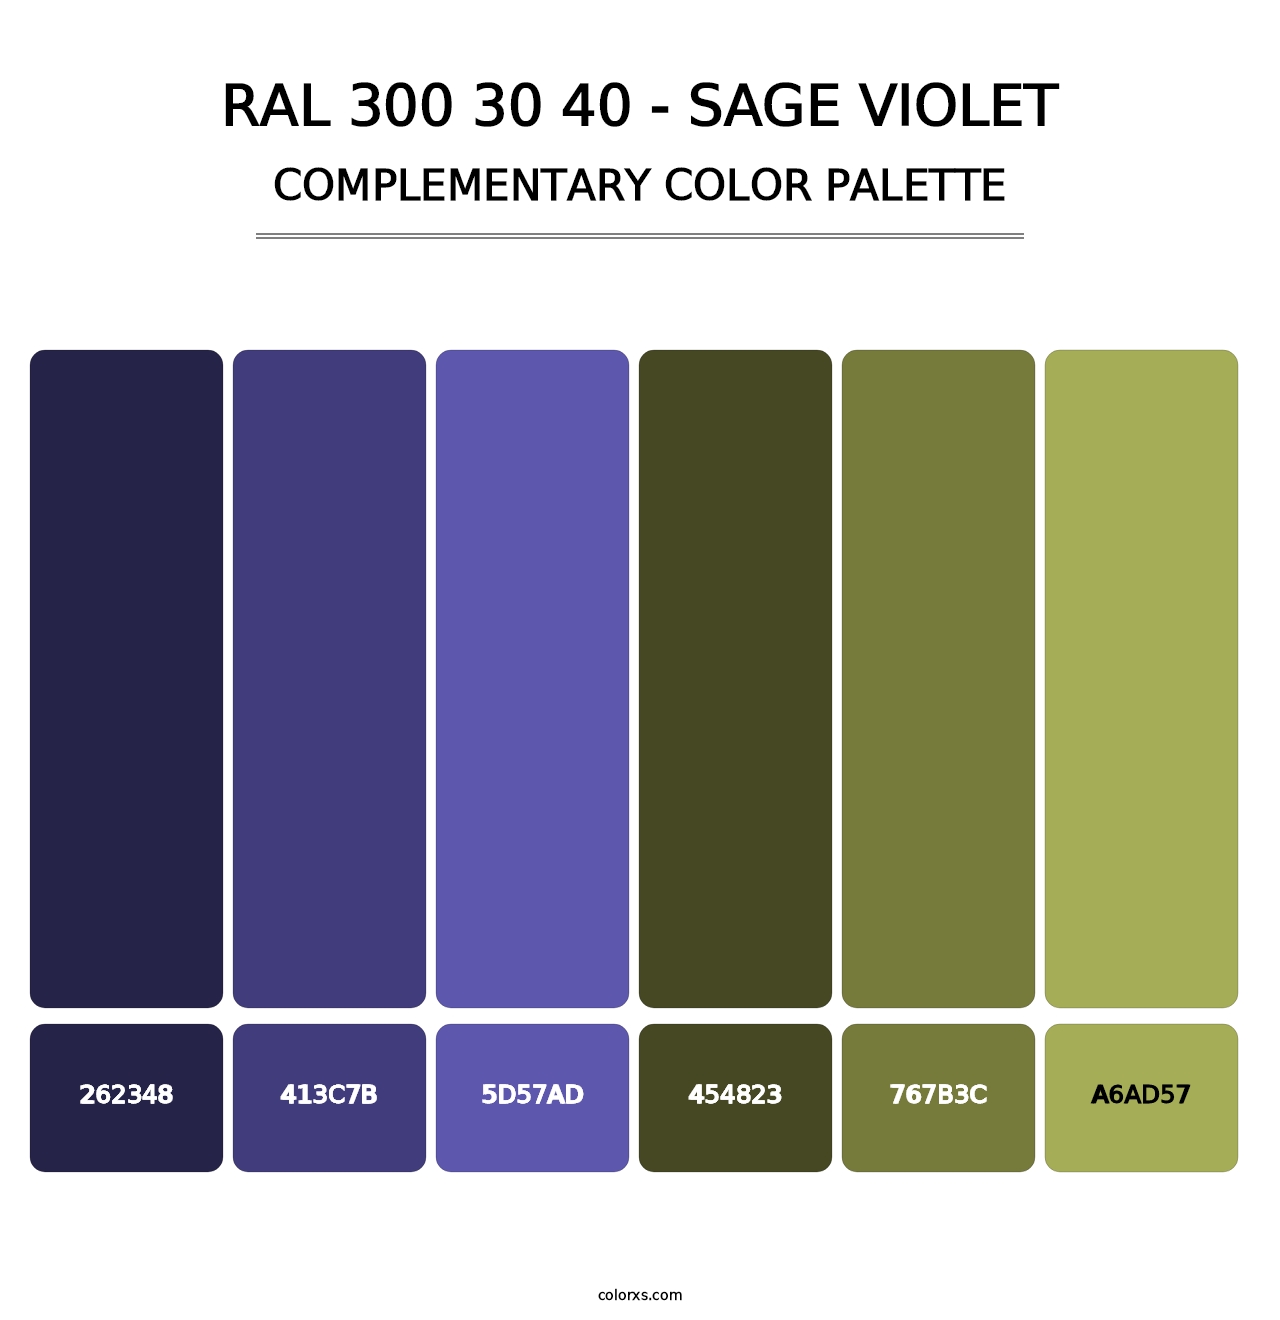 RAL 300 30 40 - Sage Violet - Complementary Color Palette